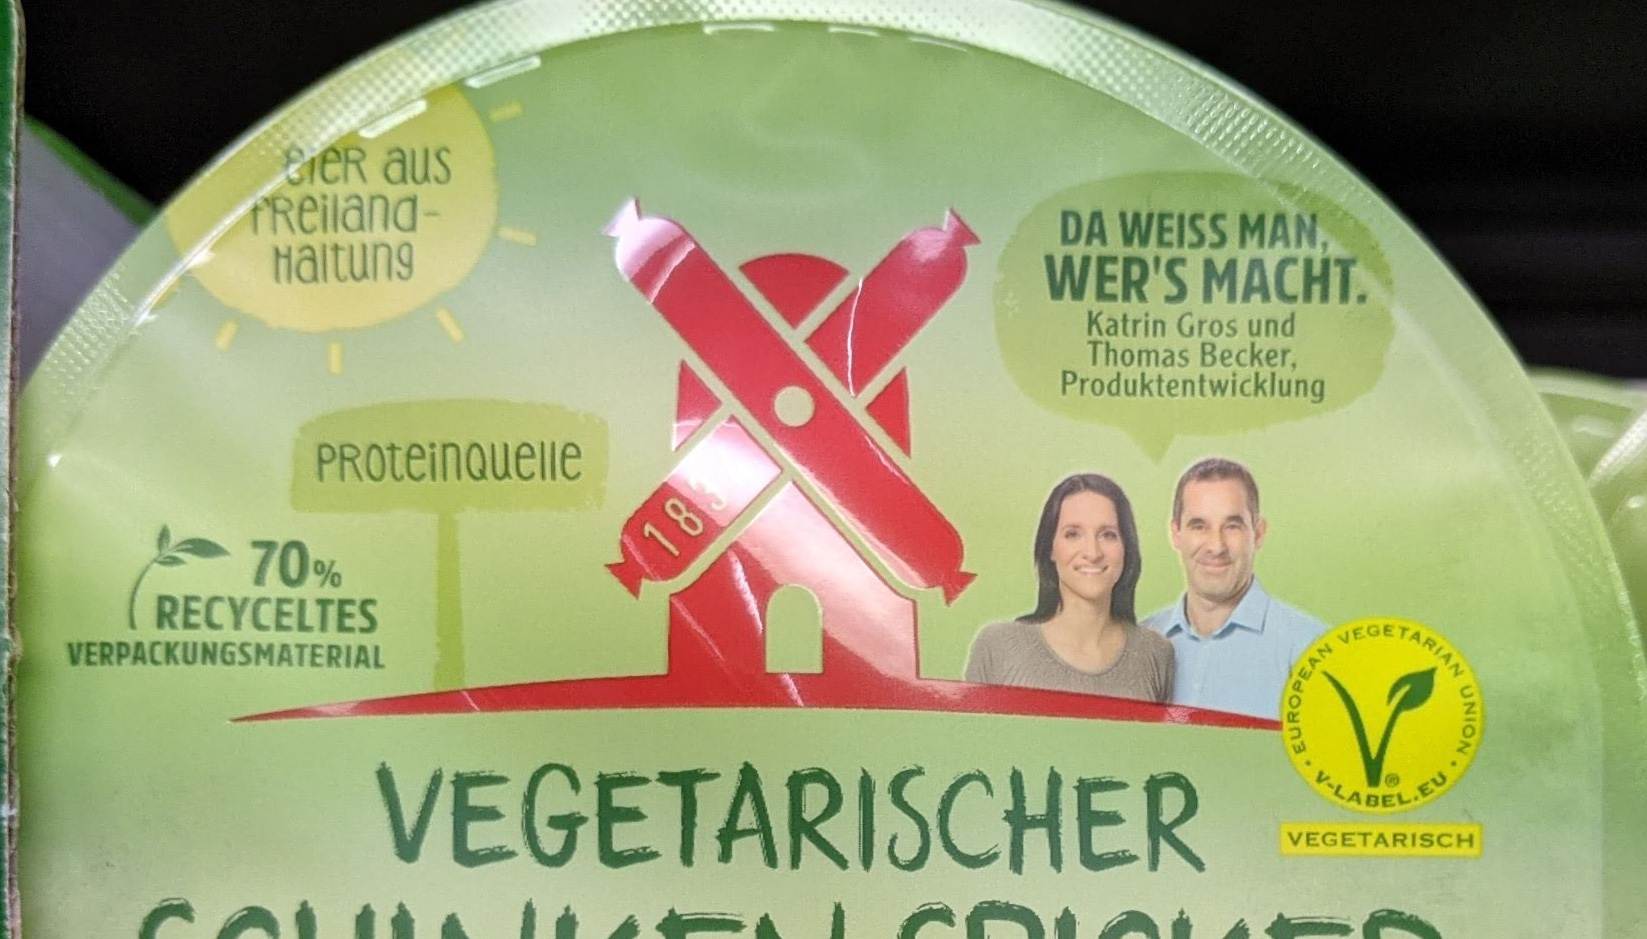 Rügenwalder Veggie to go: 1000 Preise für unterwegs gewinnen - Kassenbon hochladen